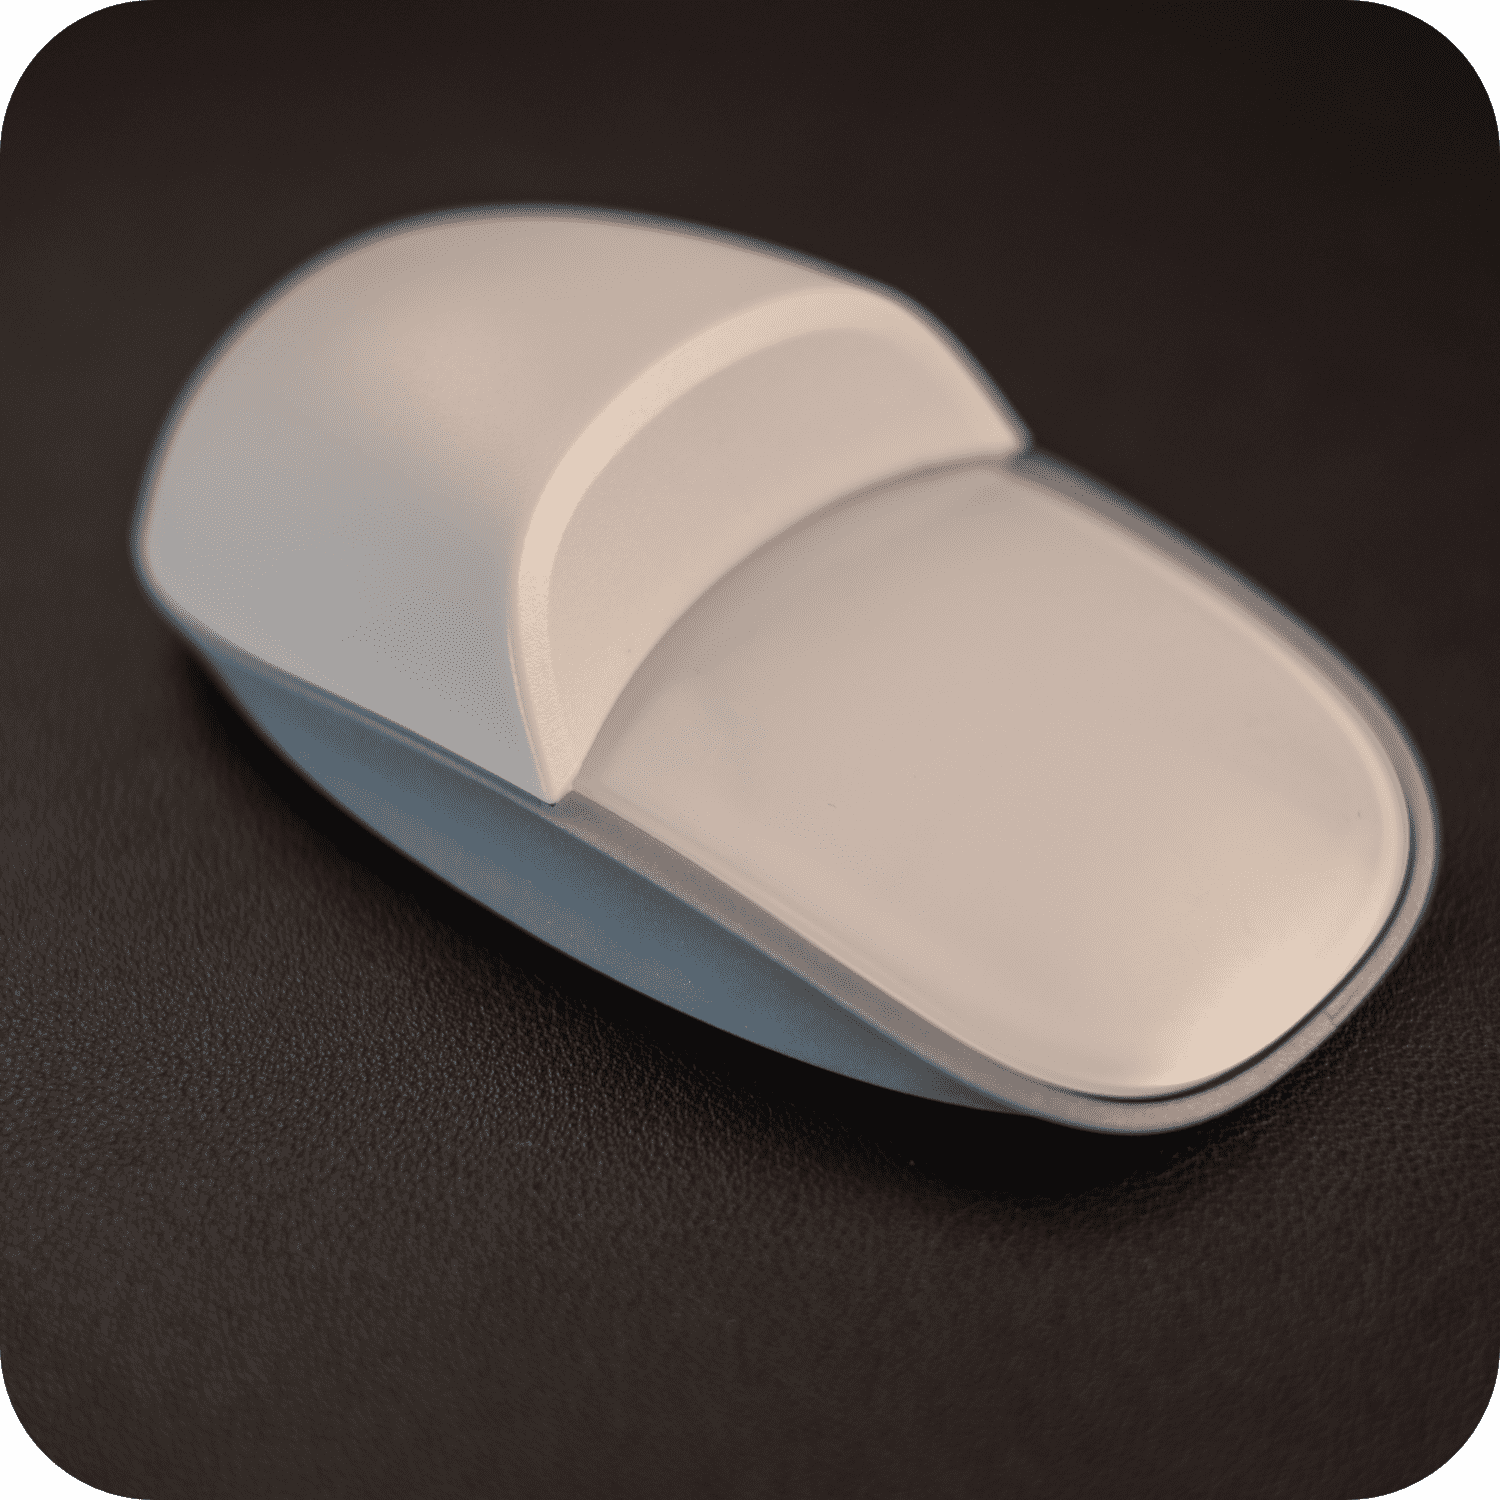 Solumics.Case - La mejora ergonómica para el ratón de tu iMac